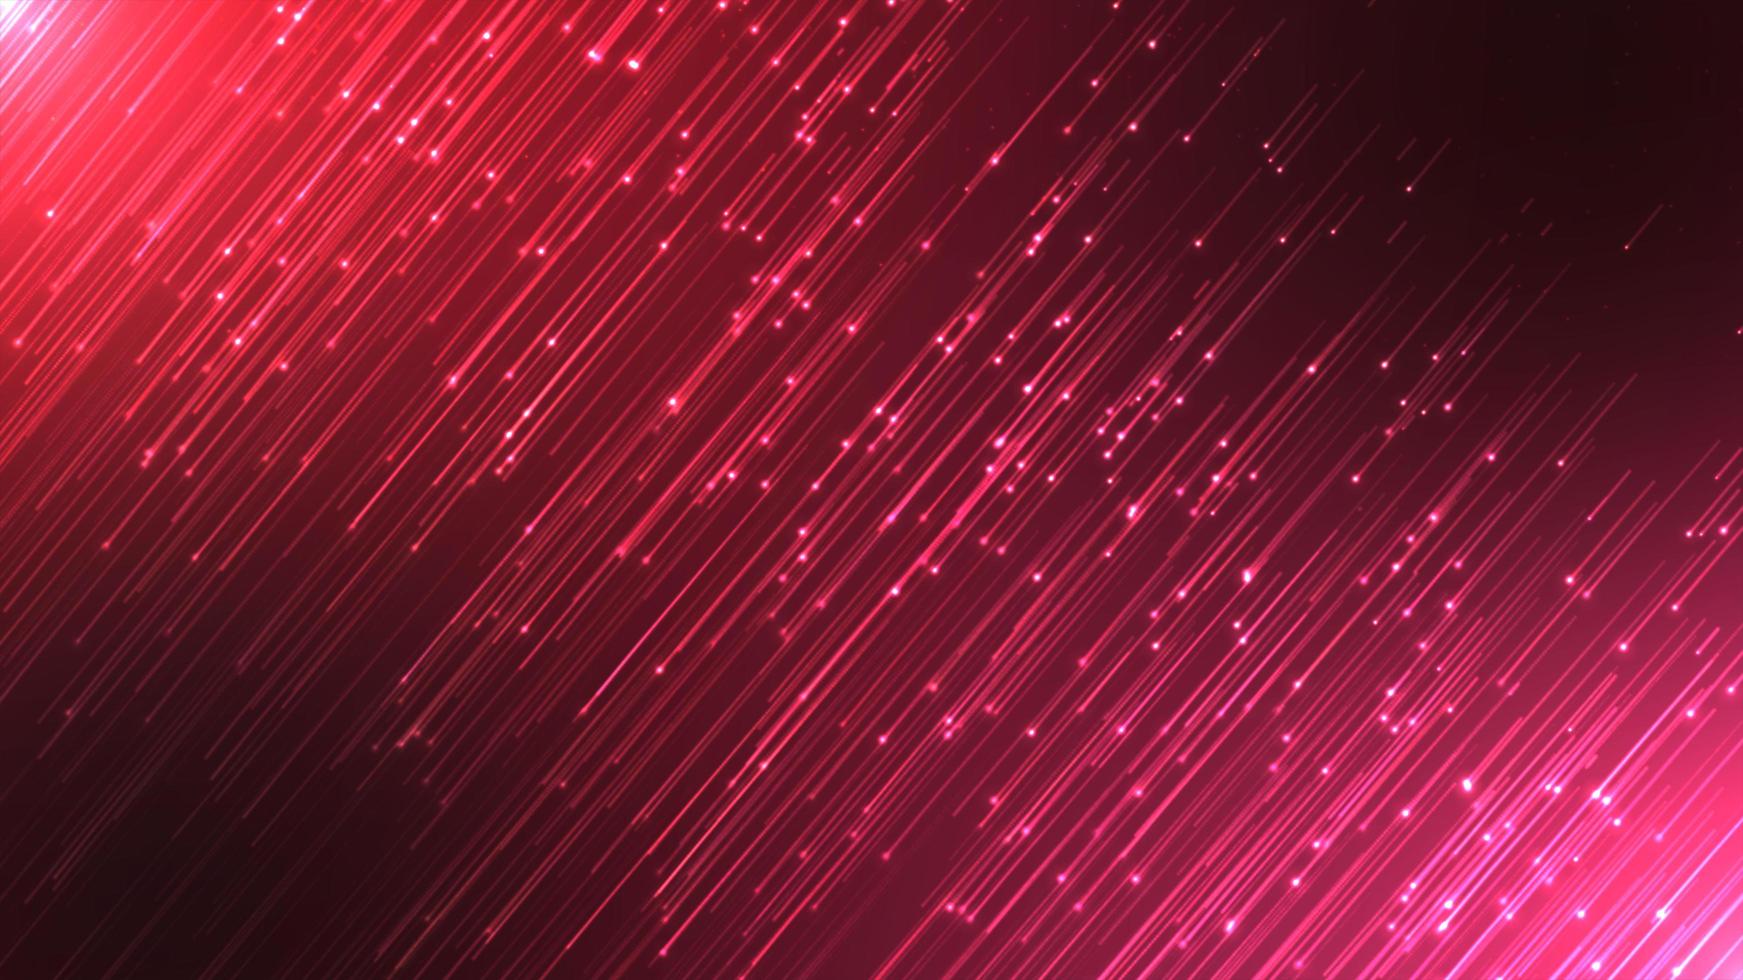 kleurrijk rood themed neon regenen deeltjes abstract animatie deeltje achtergrond, snel futuristische laser ruimte technologie cyber effect illustratie. foto